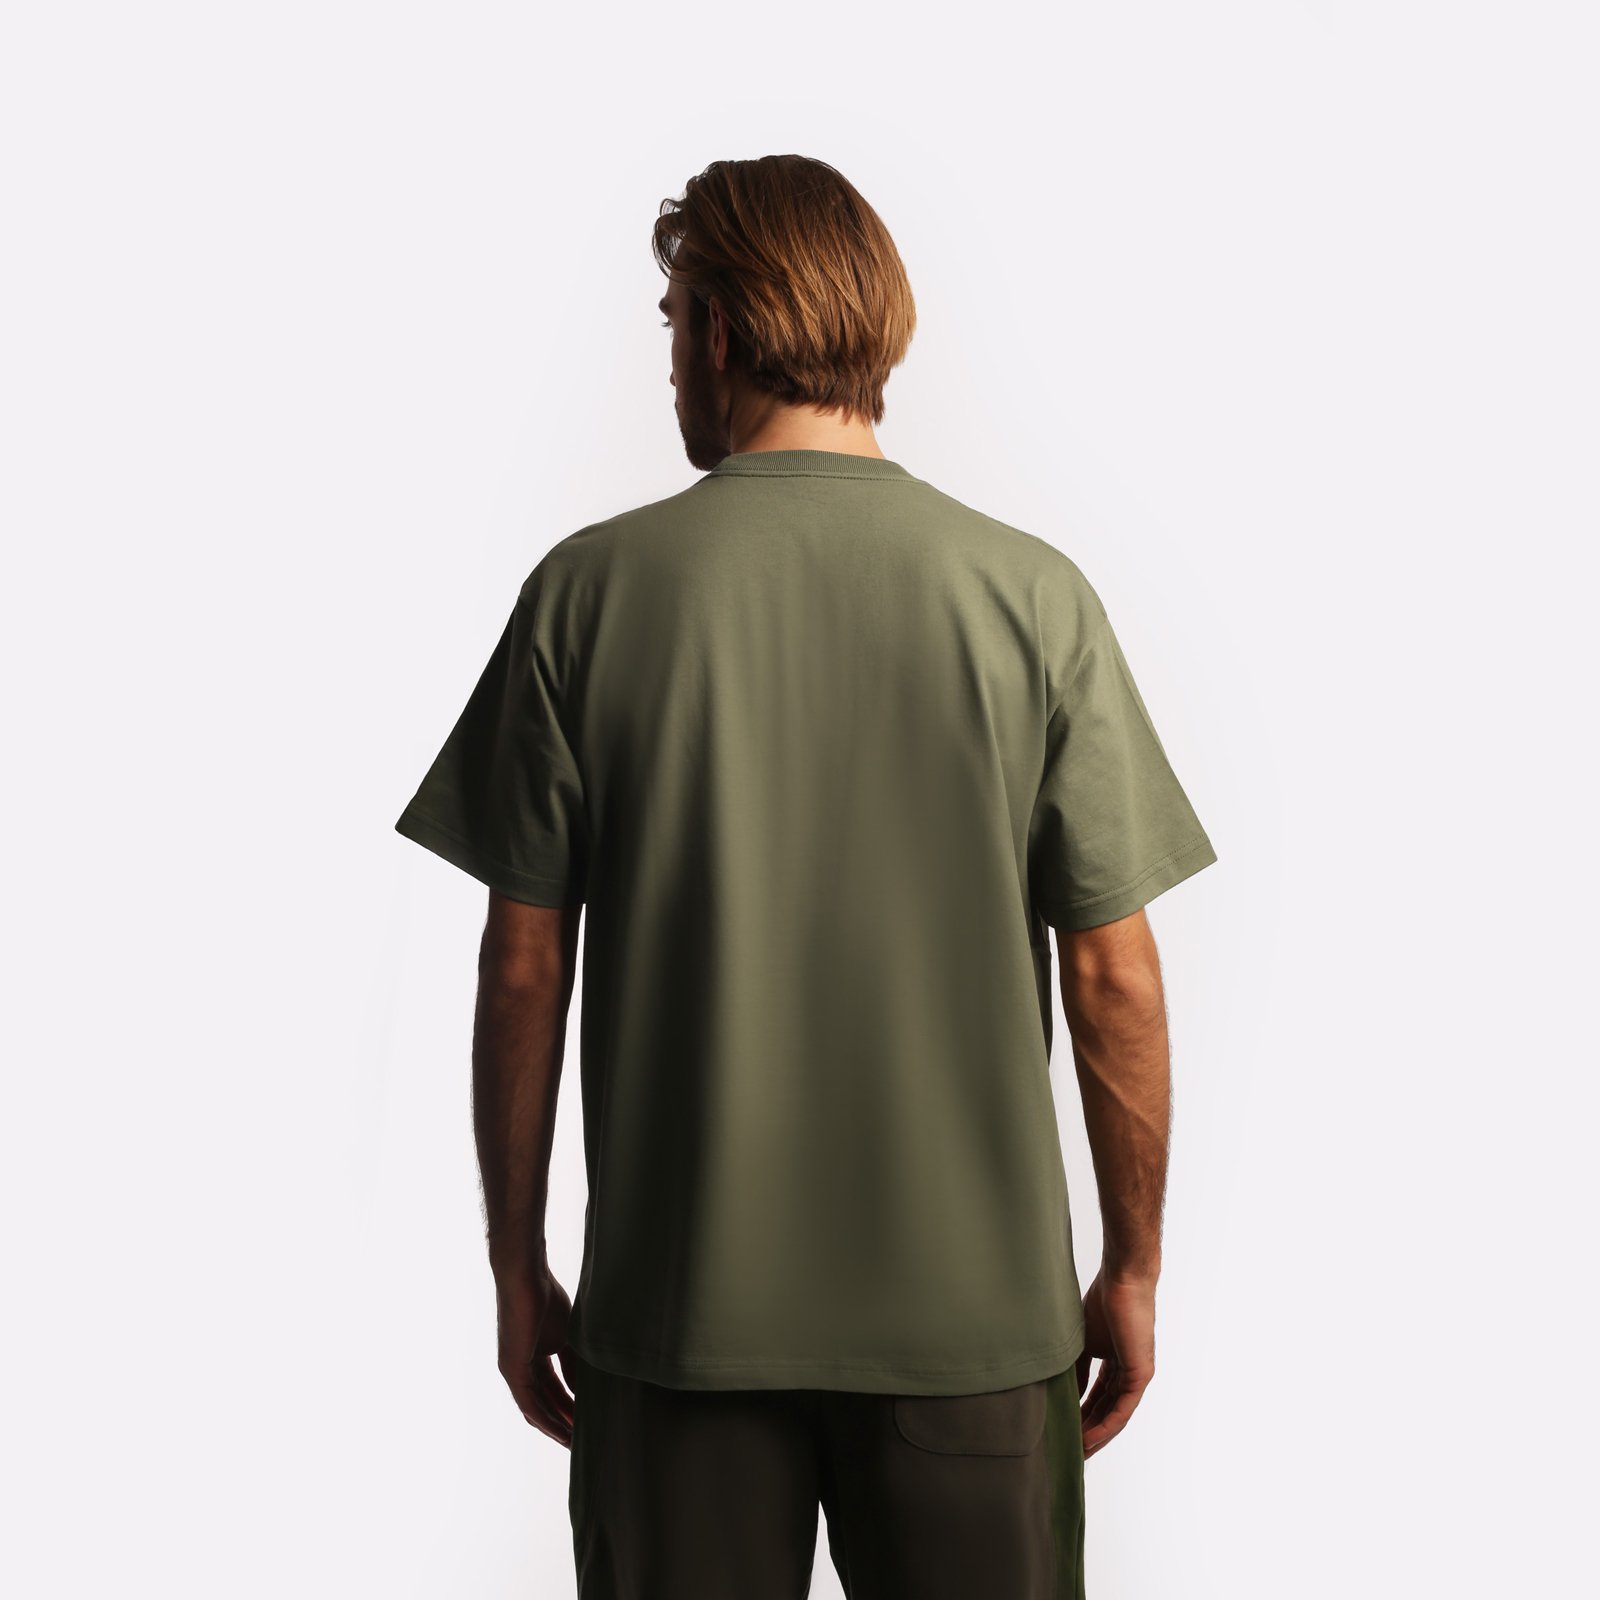 мужская футболка Carhartt WIP S/S Warm Embrace T-Shirt  (I032390-green)  - цена, описание, фото 2